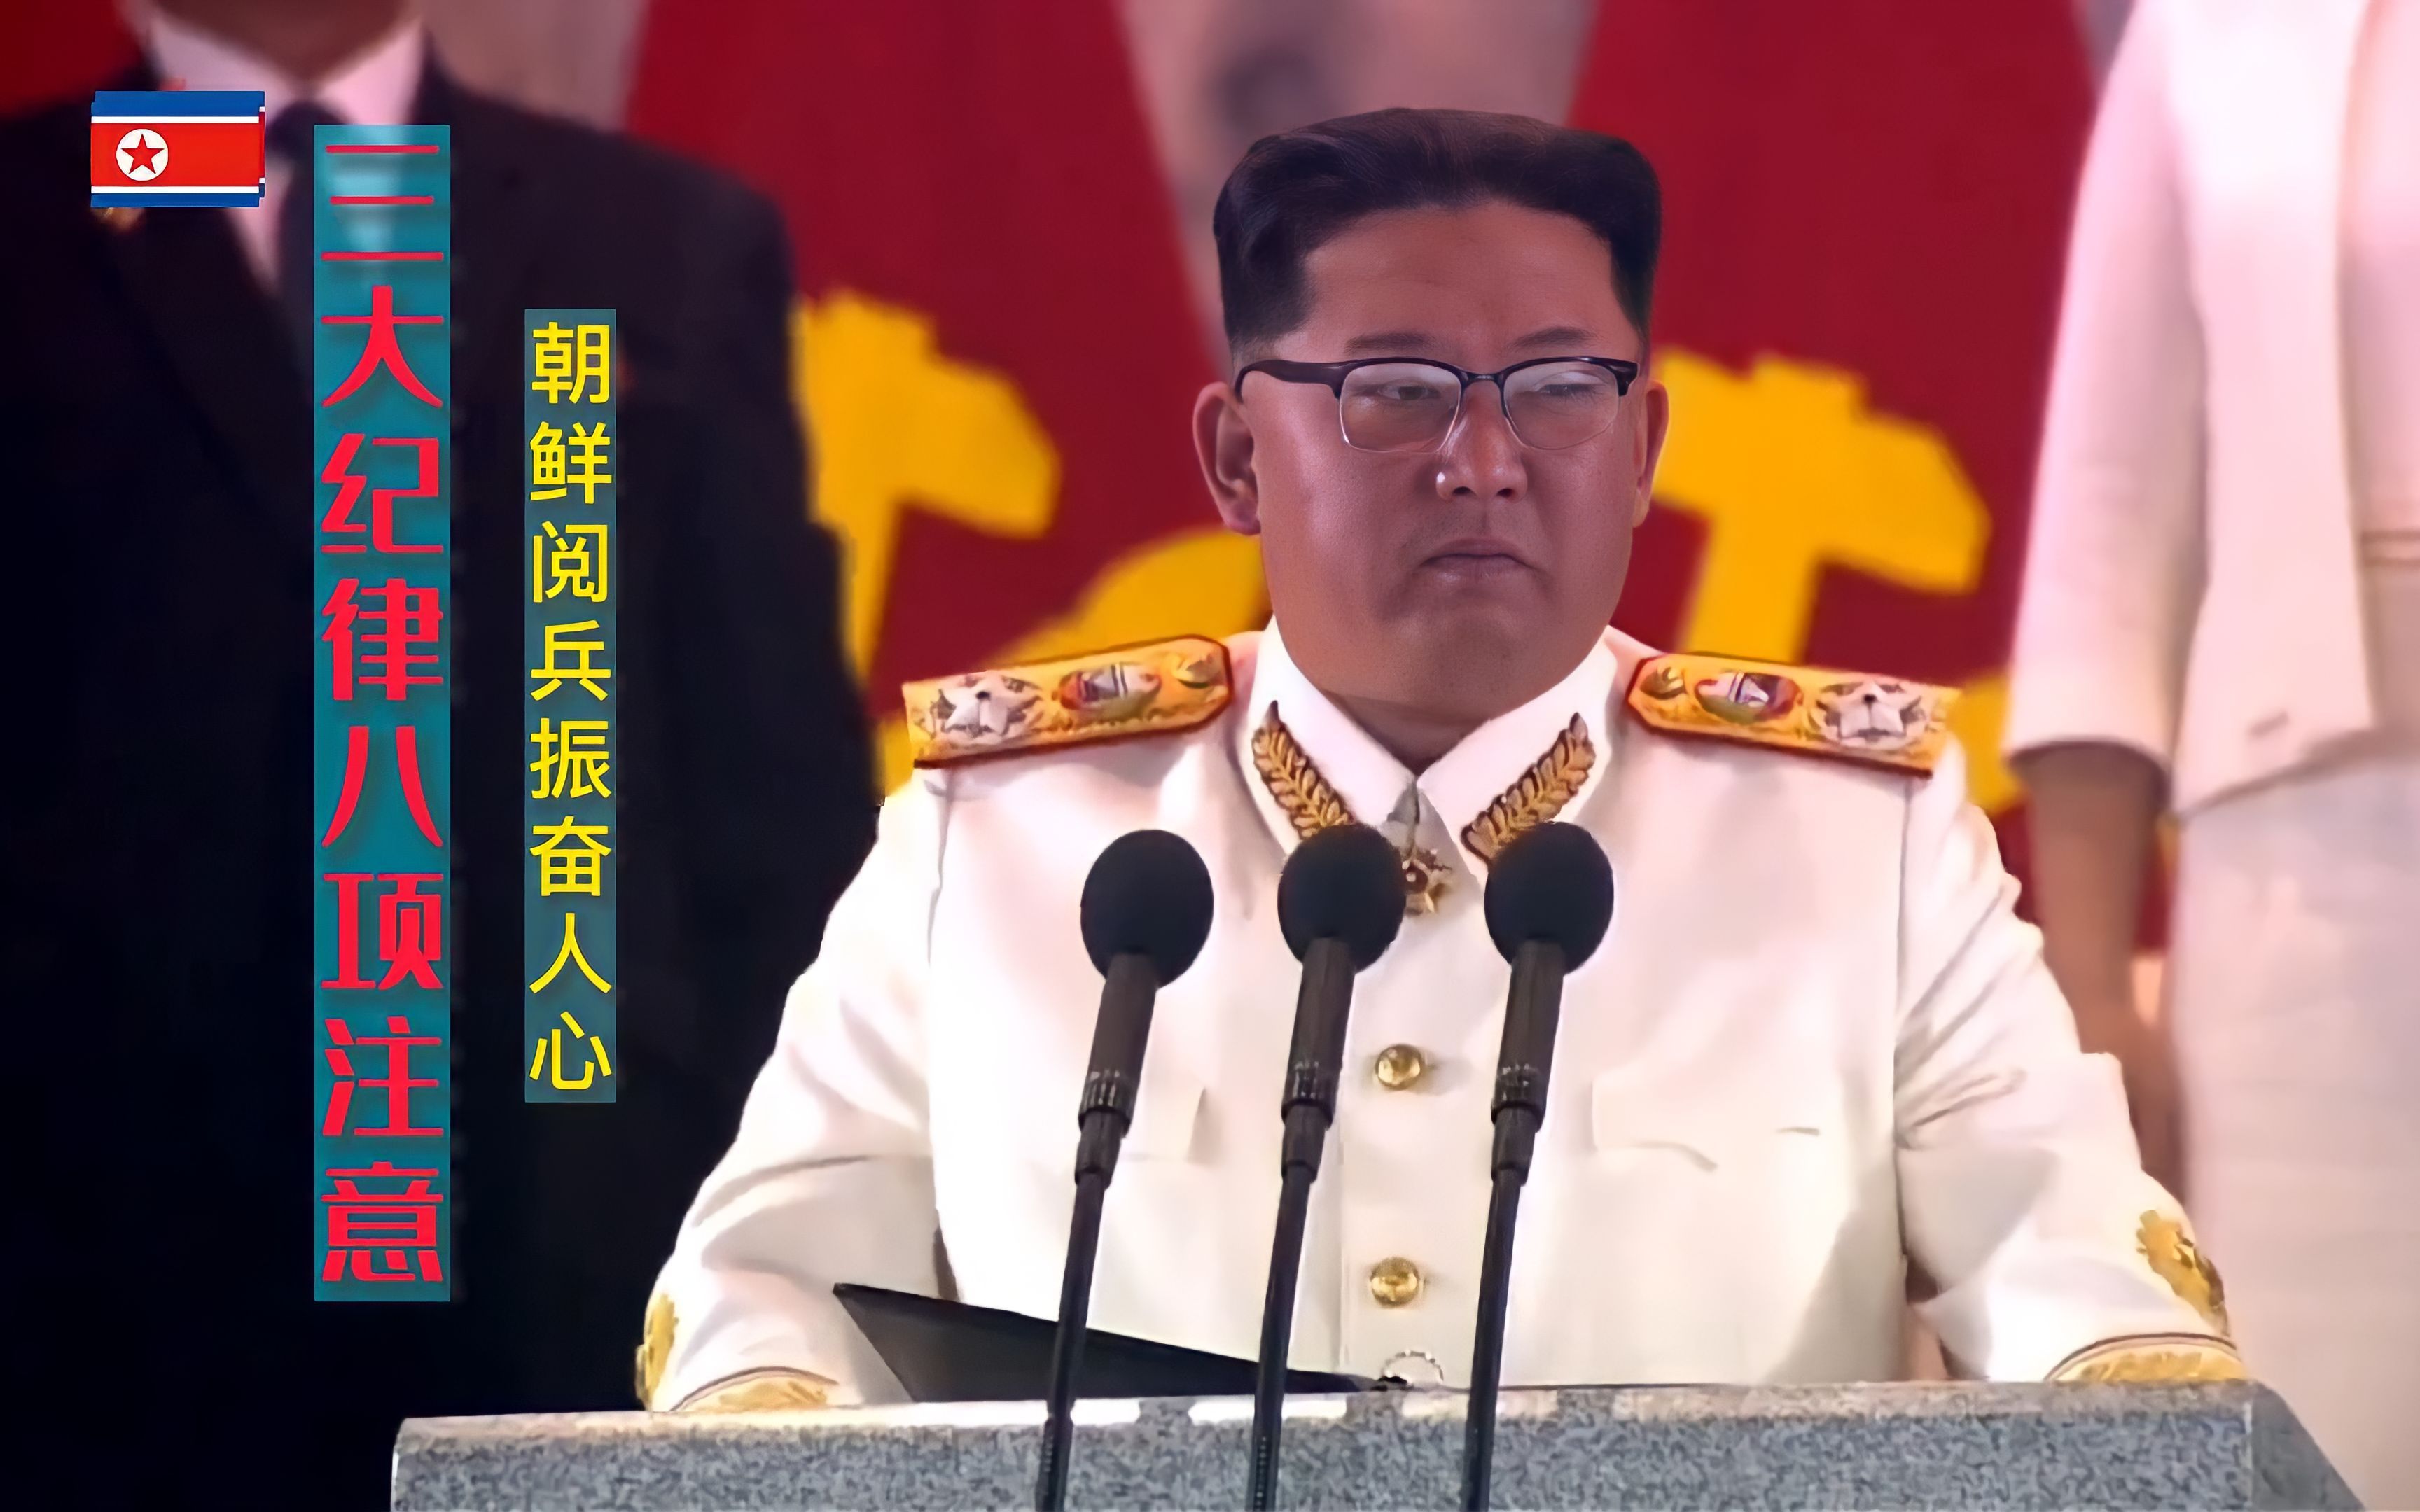 朝鲜合唱团演唱《三大纪律八项注意》，配朝鲜阅兵画面，气势恢宏